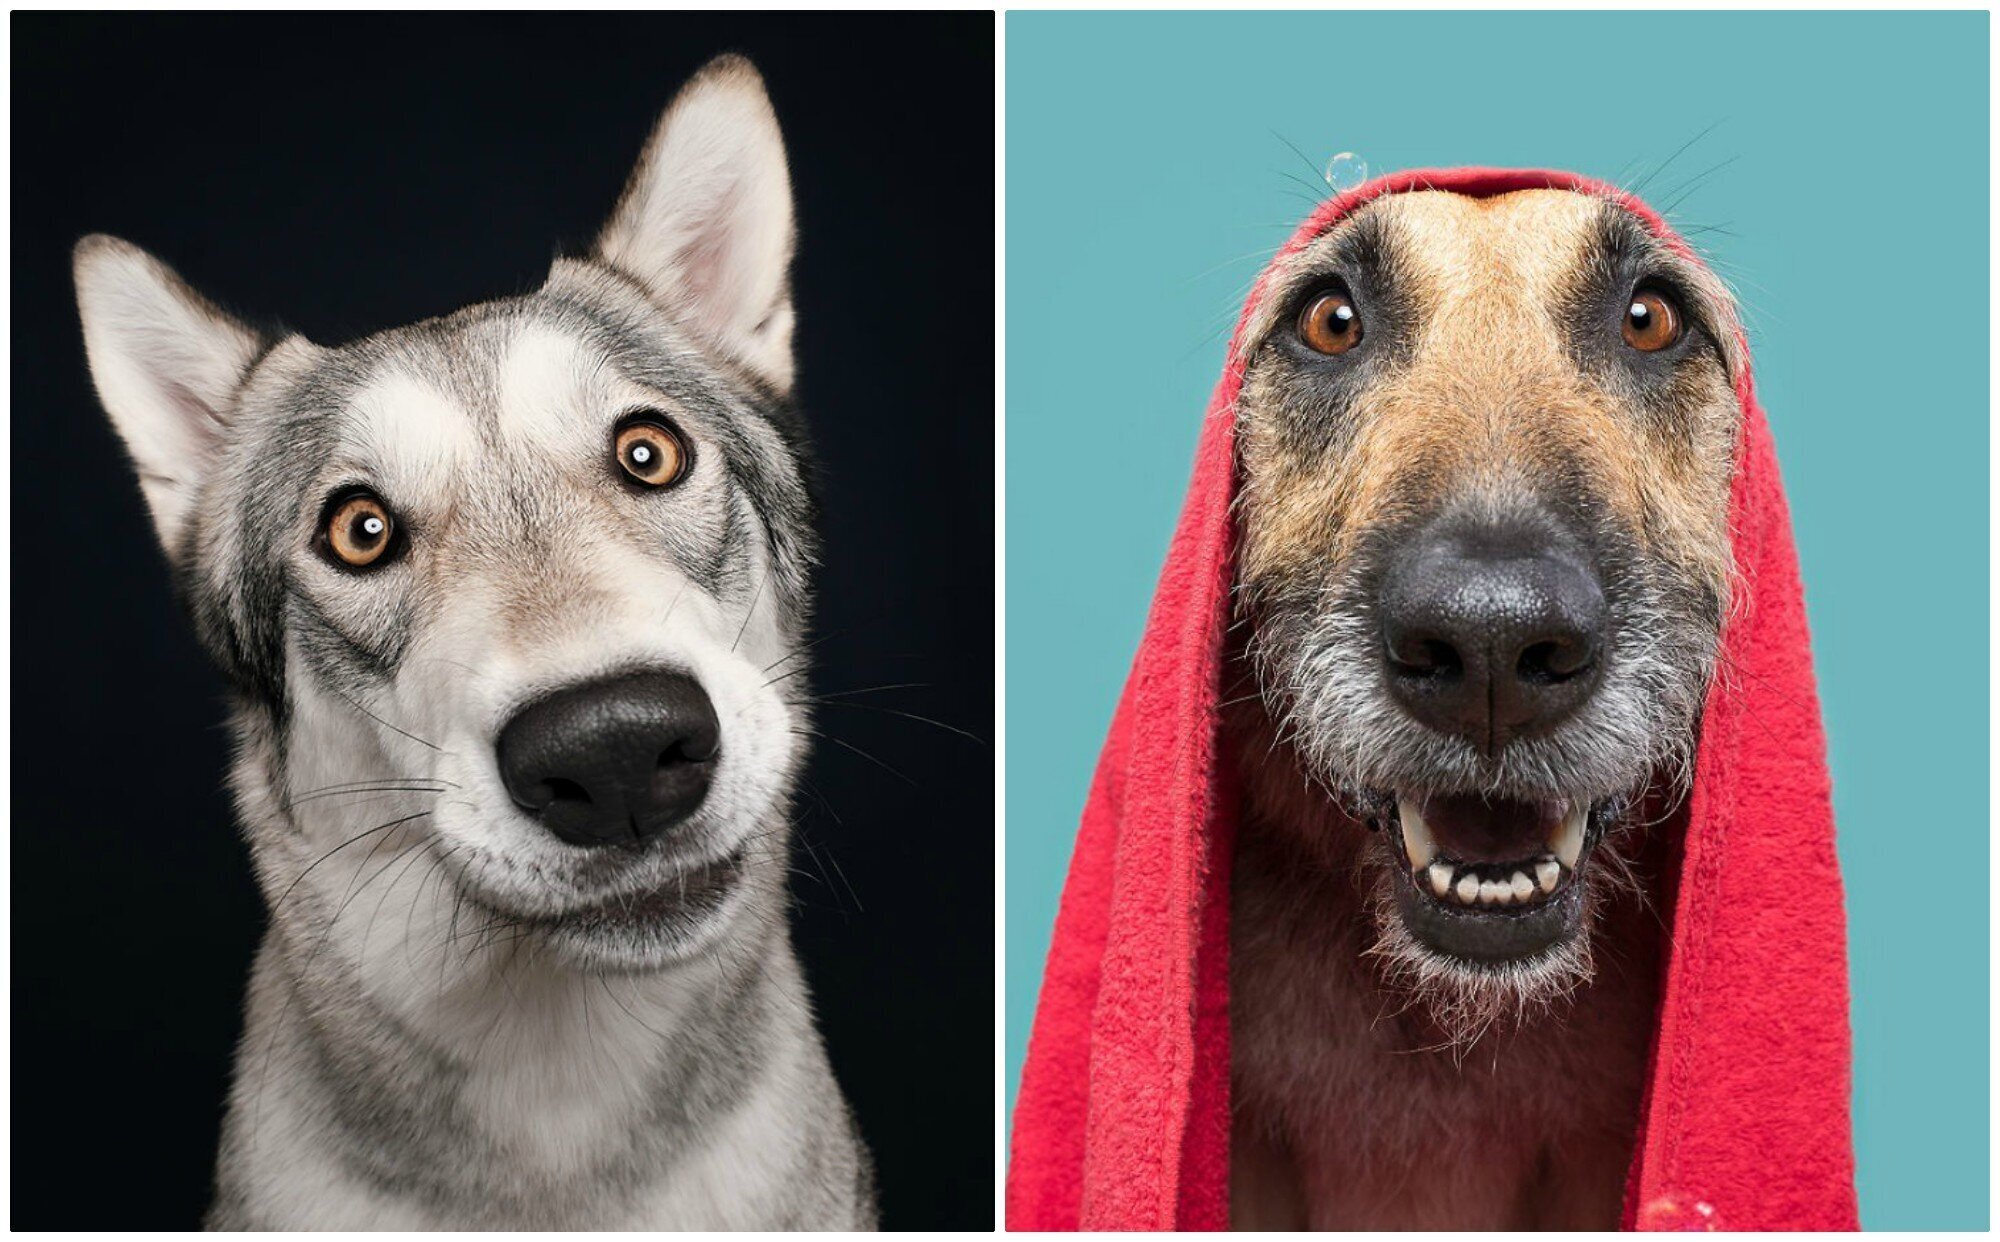 Сплошные эмоции! Забавные портреты собак самых разных пород (21 фото)